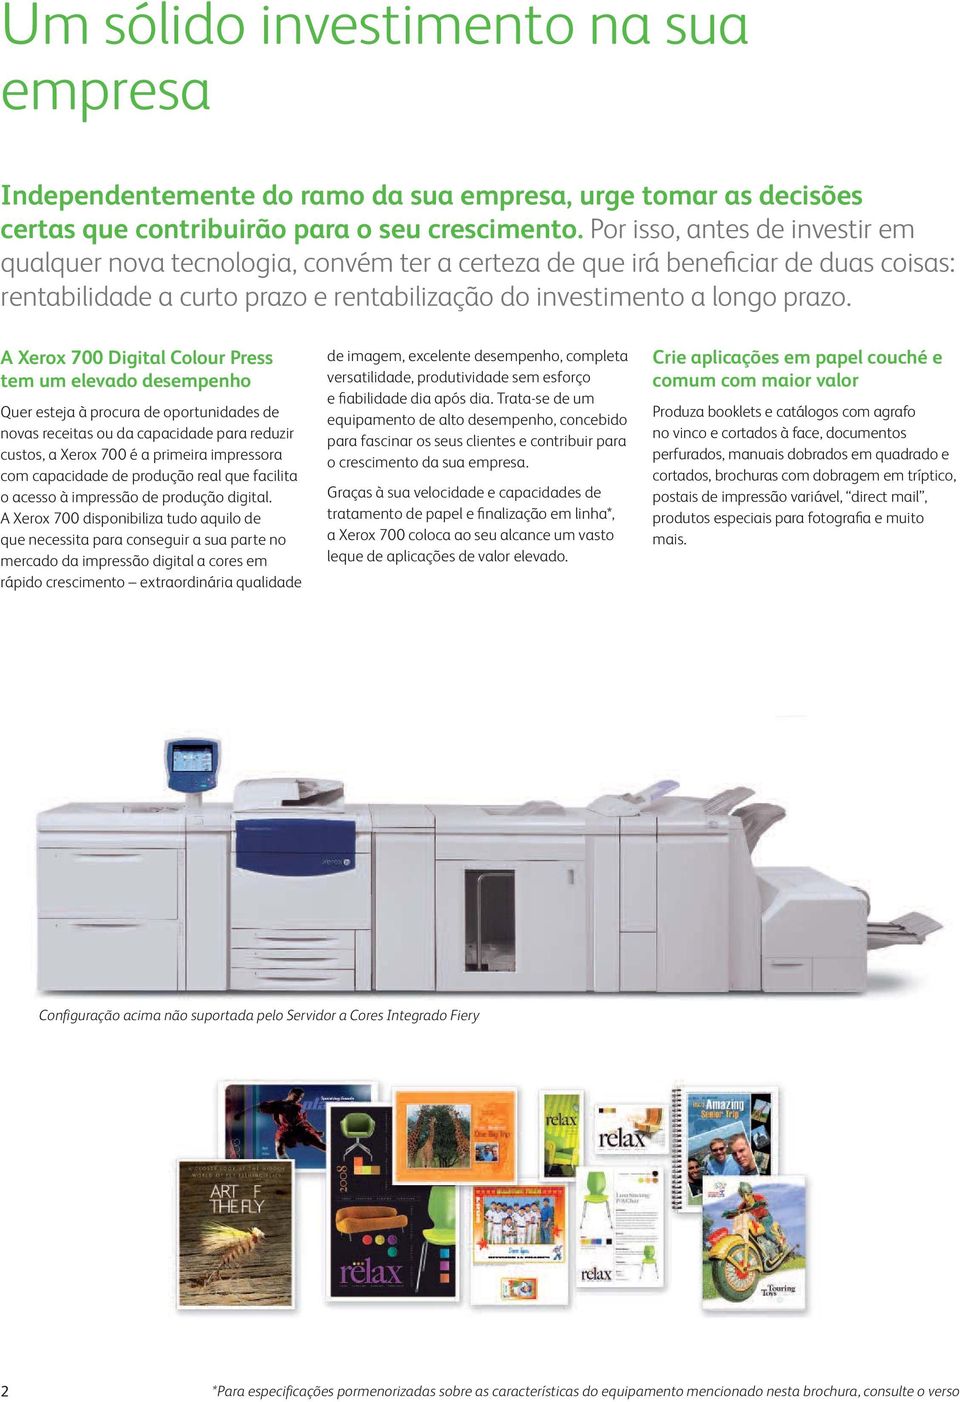 A Xerox 700 Digital Colour Press tem um elevado desempenho Quer esteja à procura de oportunidades de novas receitas ou da capacidade para reduzir custos, a Xerox 700 é a primeira impressora com